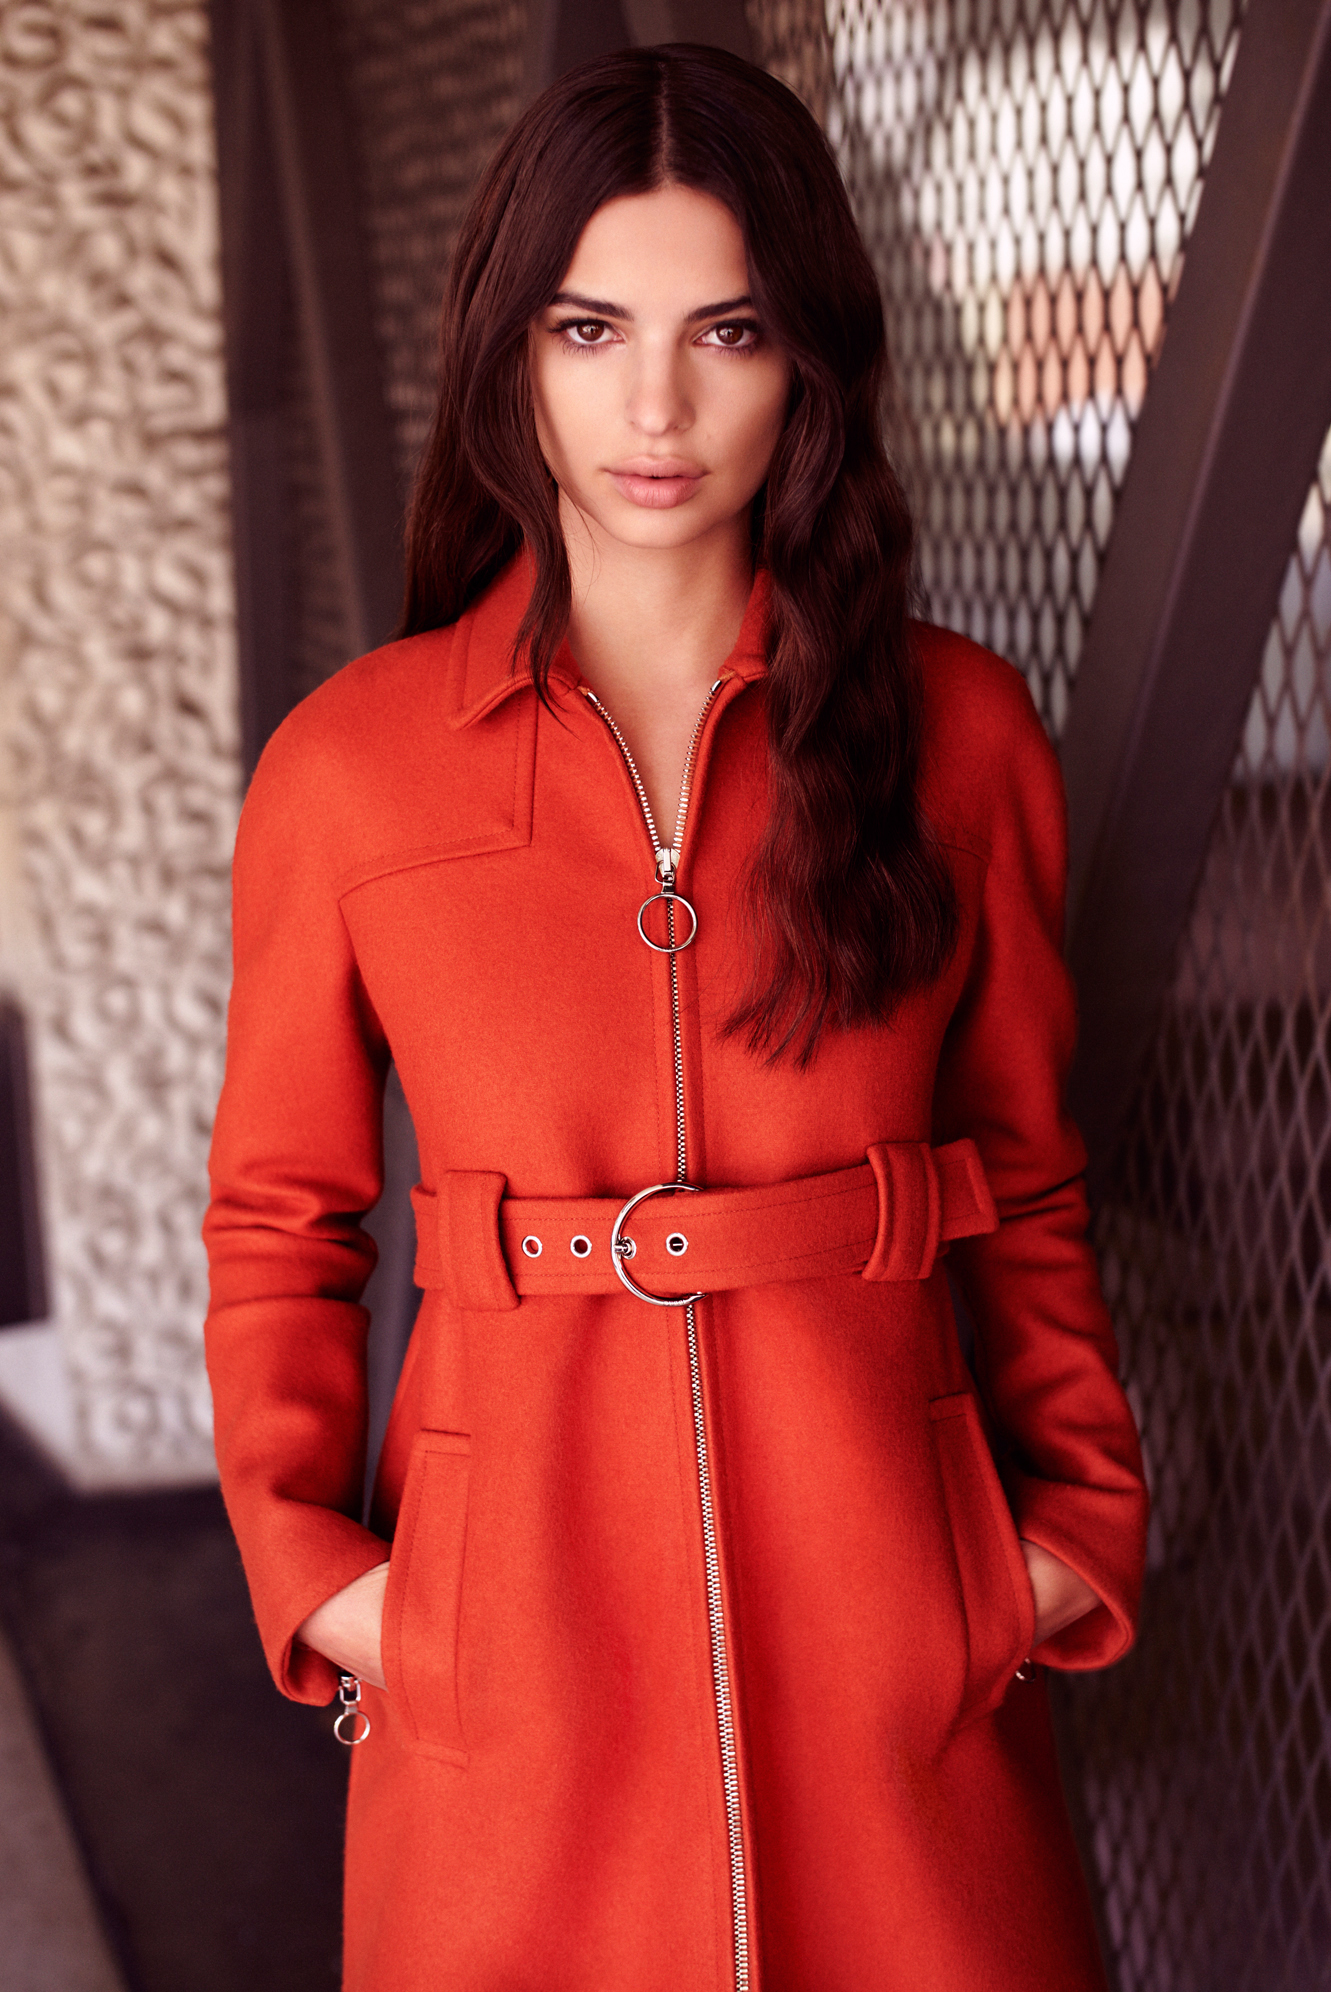 Women Model Actress Brunette Dark Hair Frontal View Red Coat 1331x1992